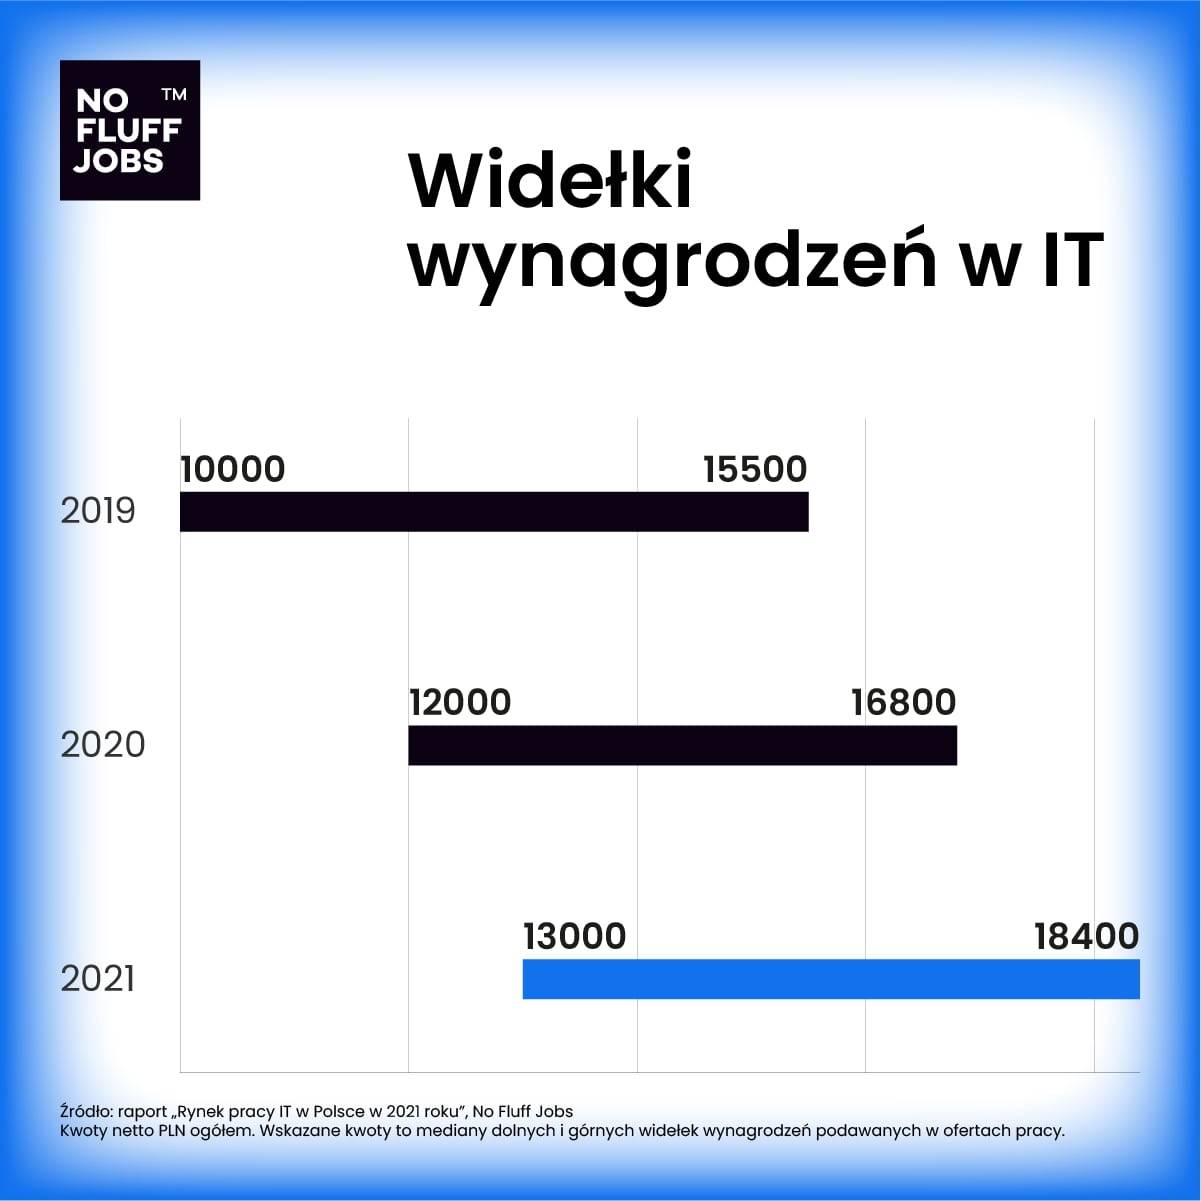 widelki_wynagrodzen_lata_no_fluff_jobs